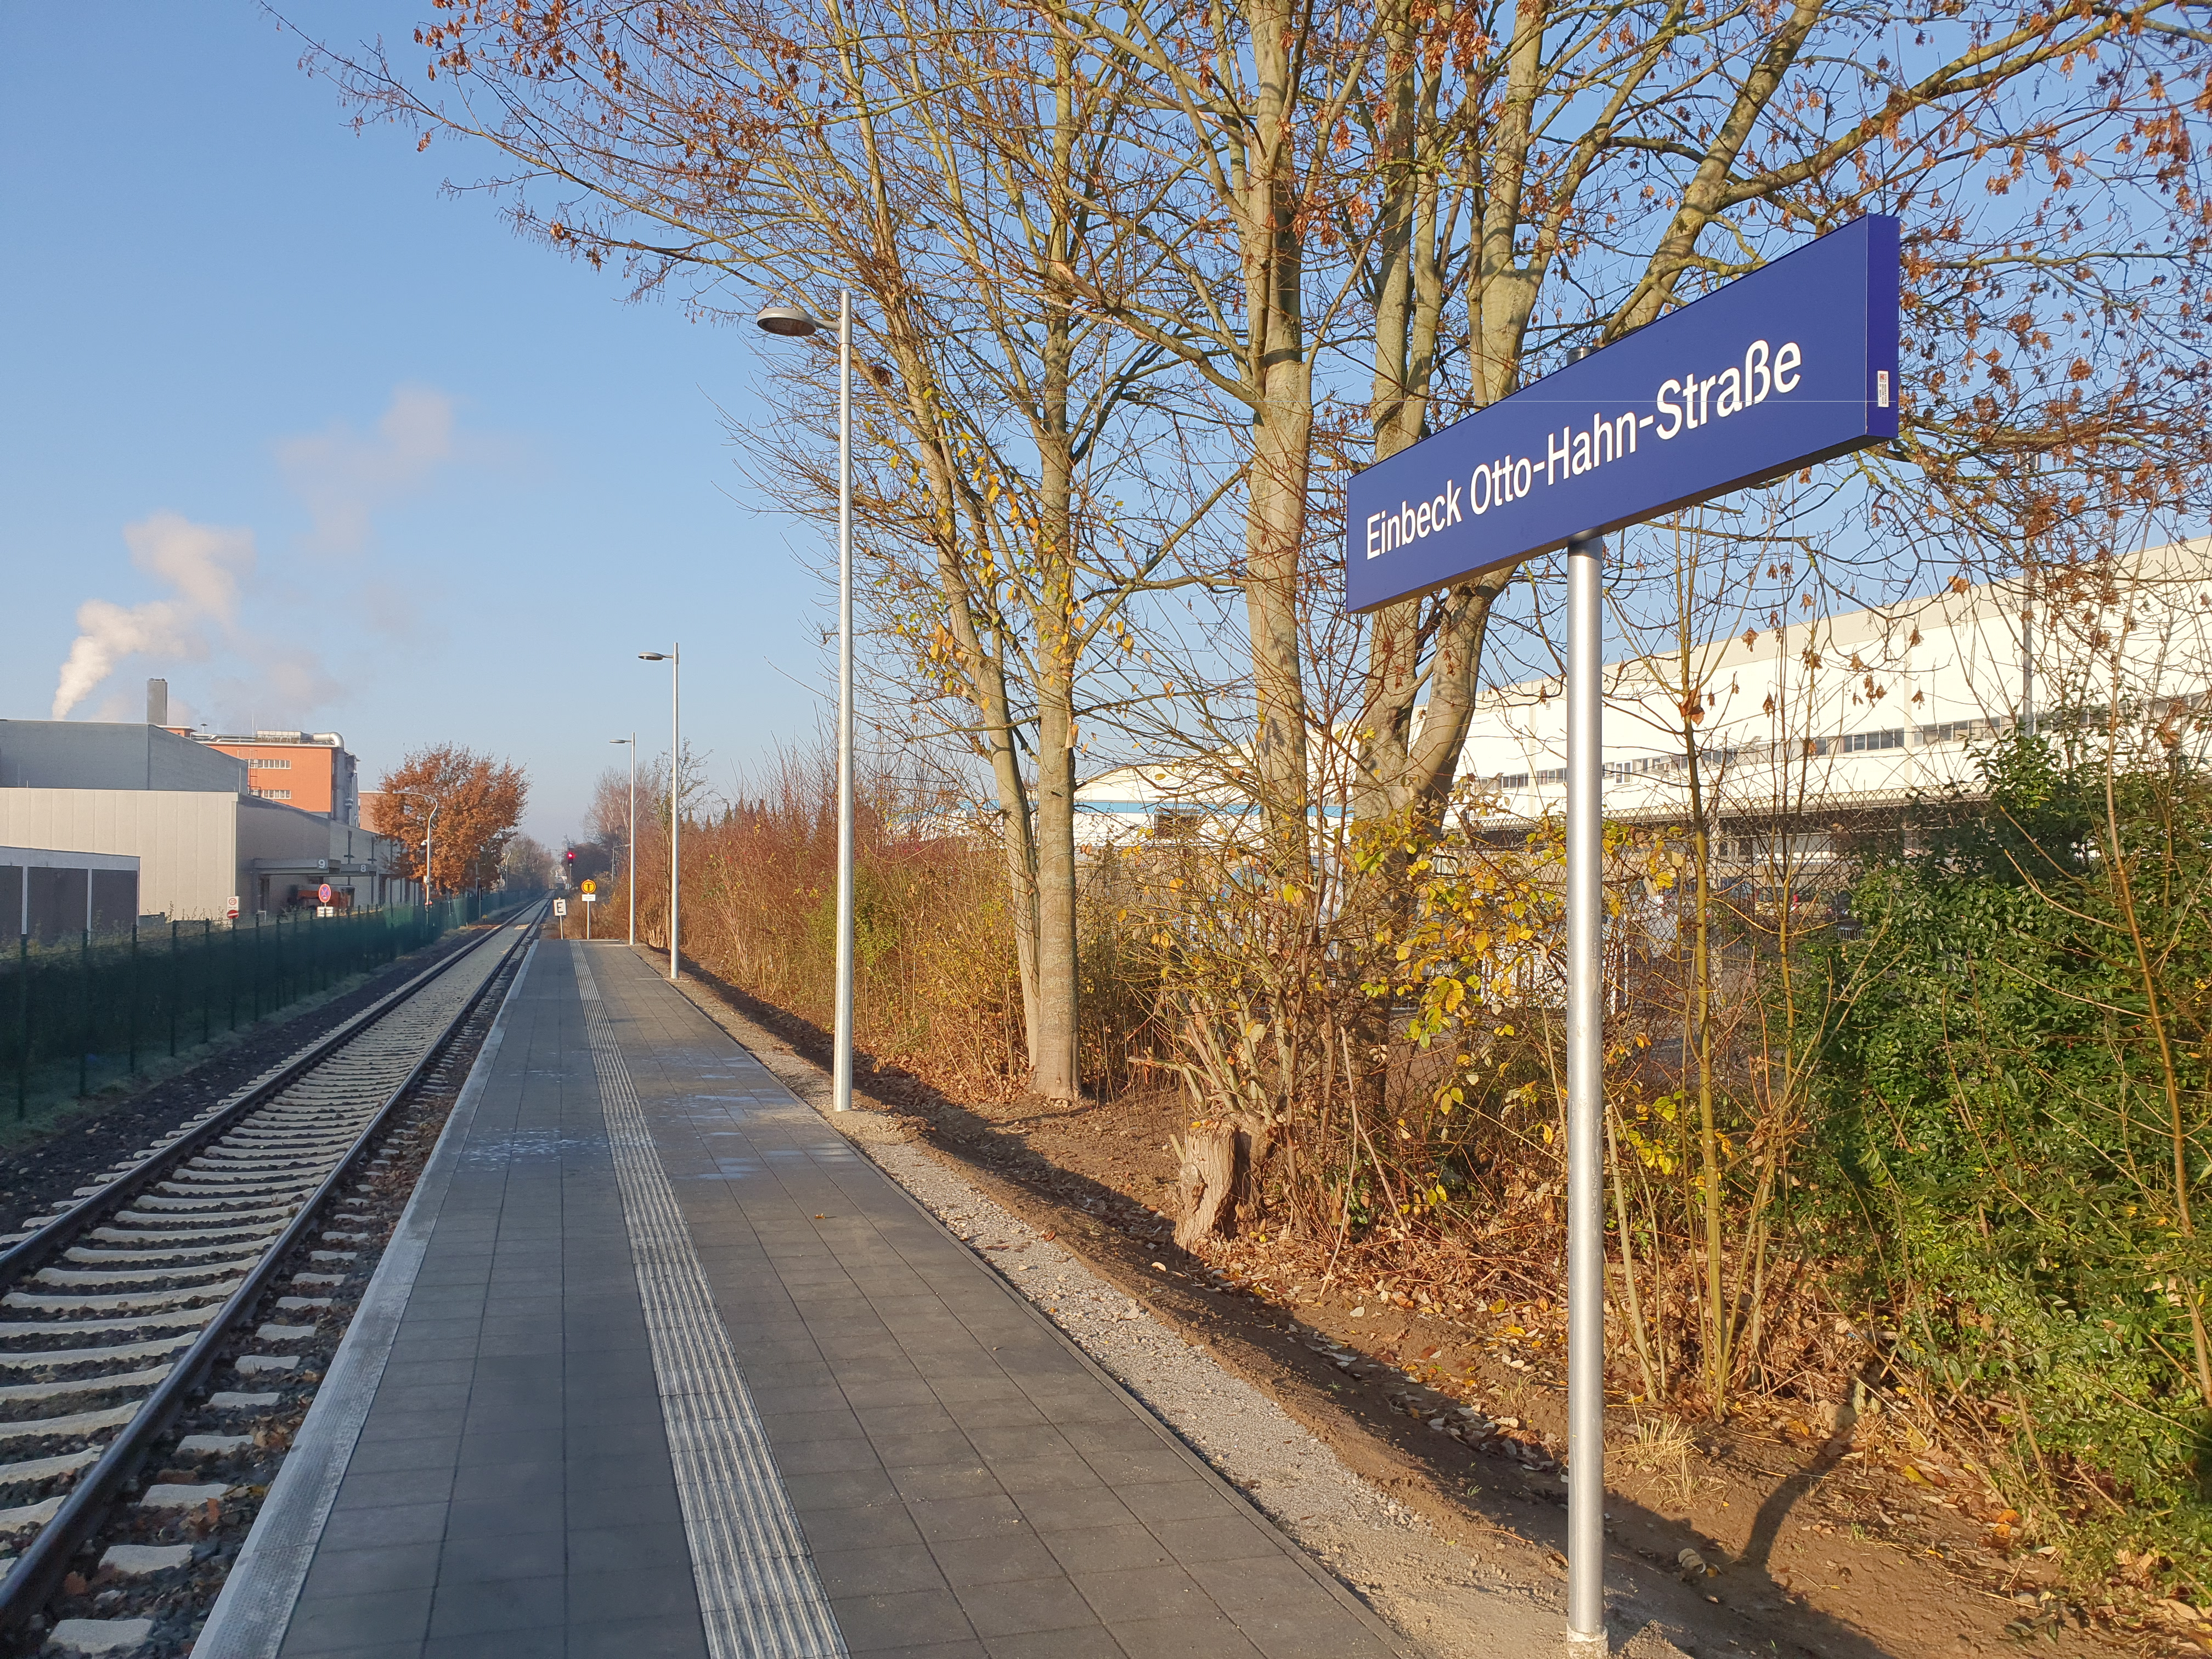 Additional Otto-Hahn-Straße train stop opened in Einbeck